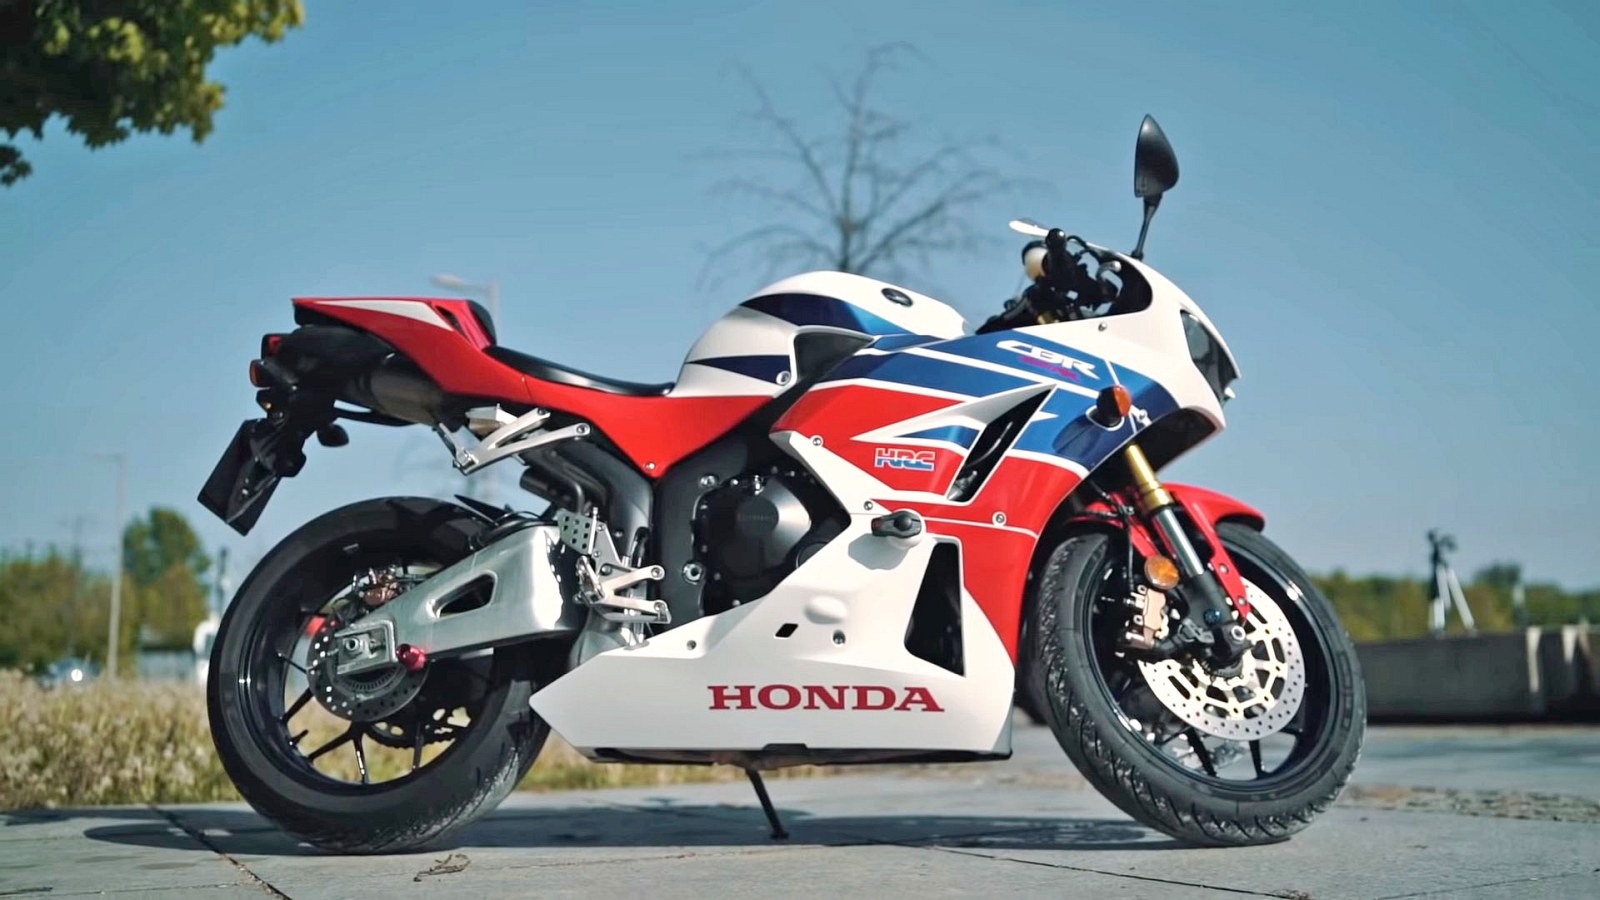 Zdjęcia Honda CBR 600 RR 2014 profil Honda CBR 600 RR z